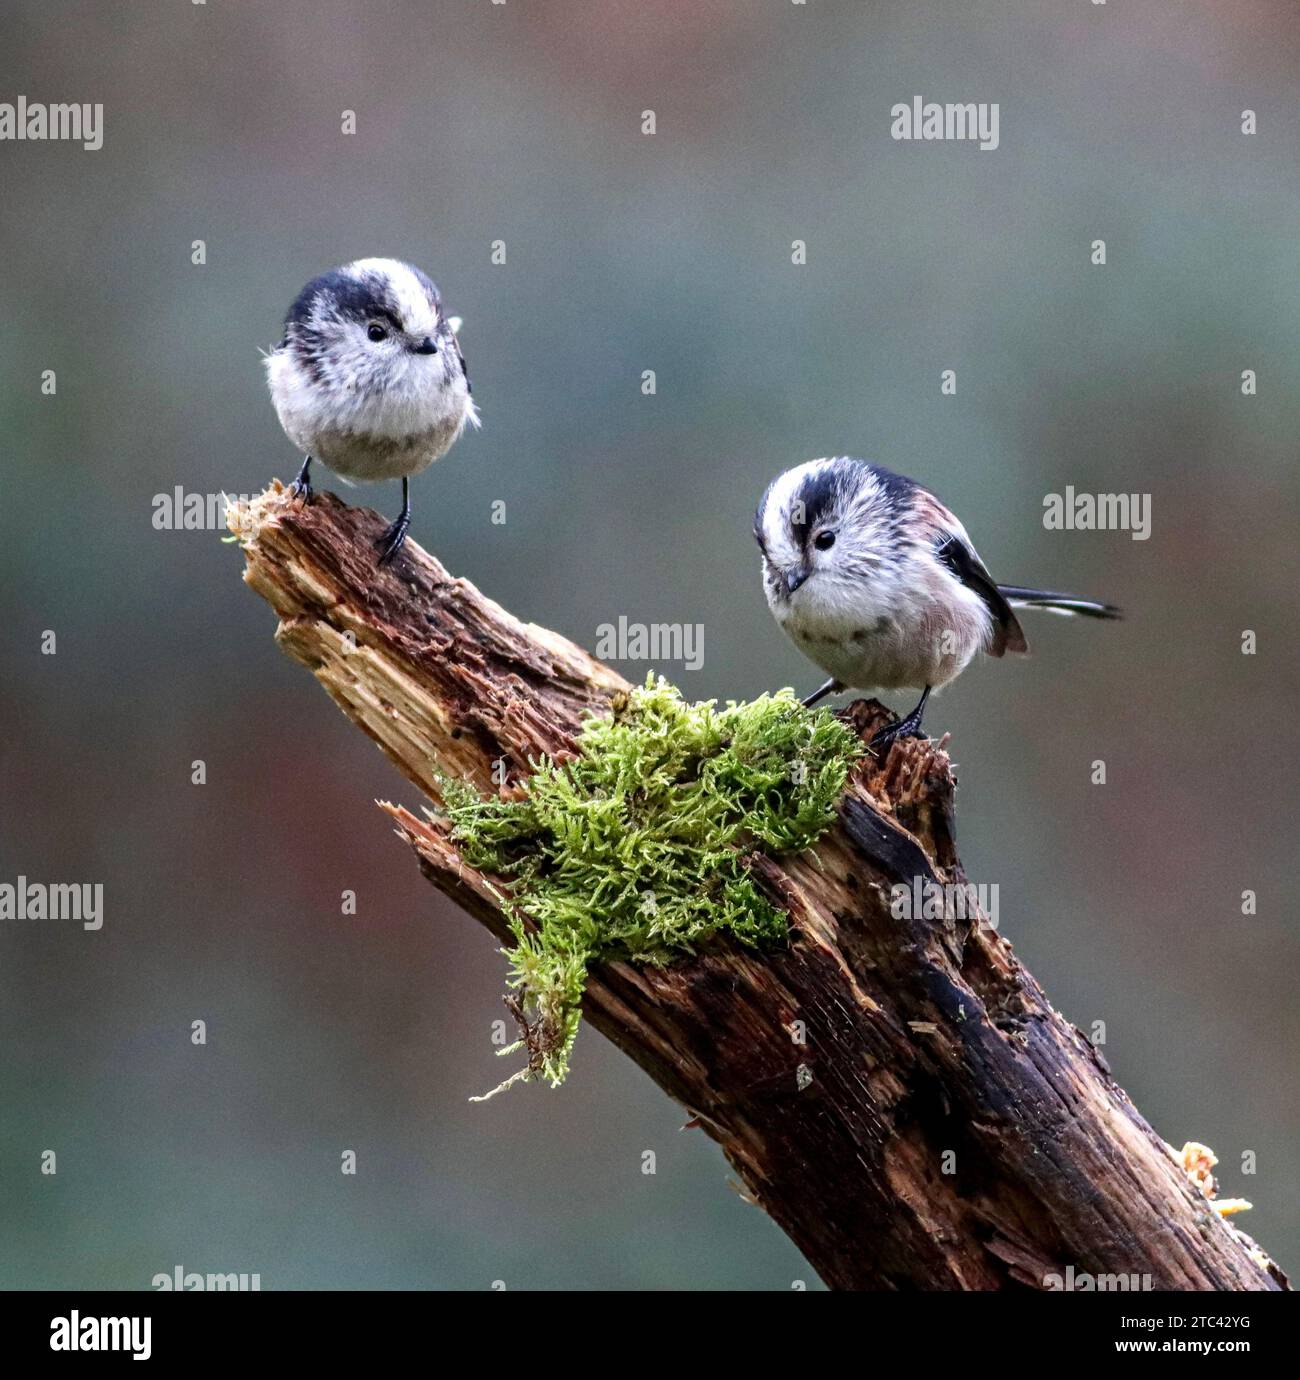 Ein friedlicher Moment wird in diesem Bild mit zwei Vögeln auf einem moosbedeckten Baumzweig festgehalten Stockfoto